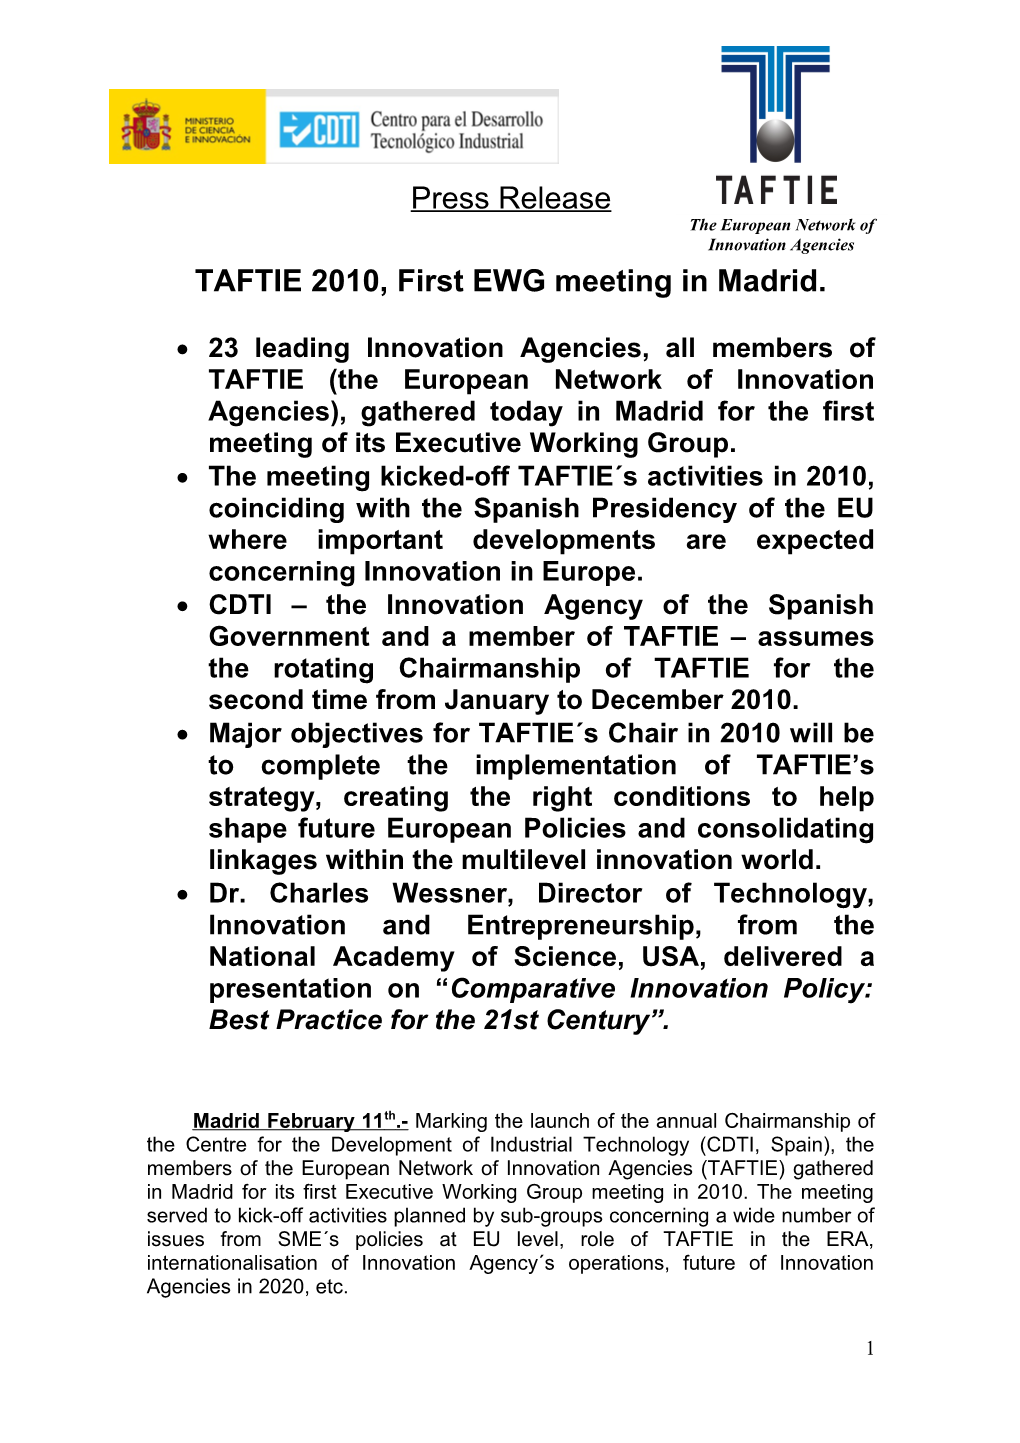 TAFTIE 2010, First EWG Meeting in Madrid